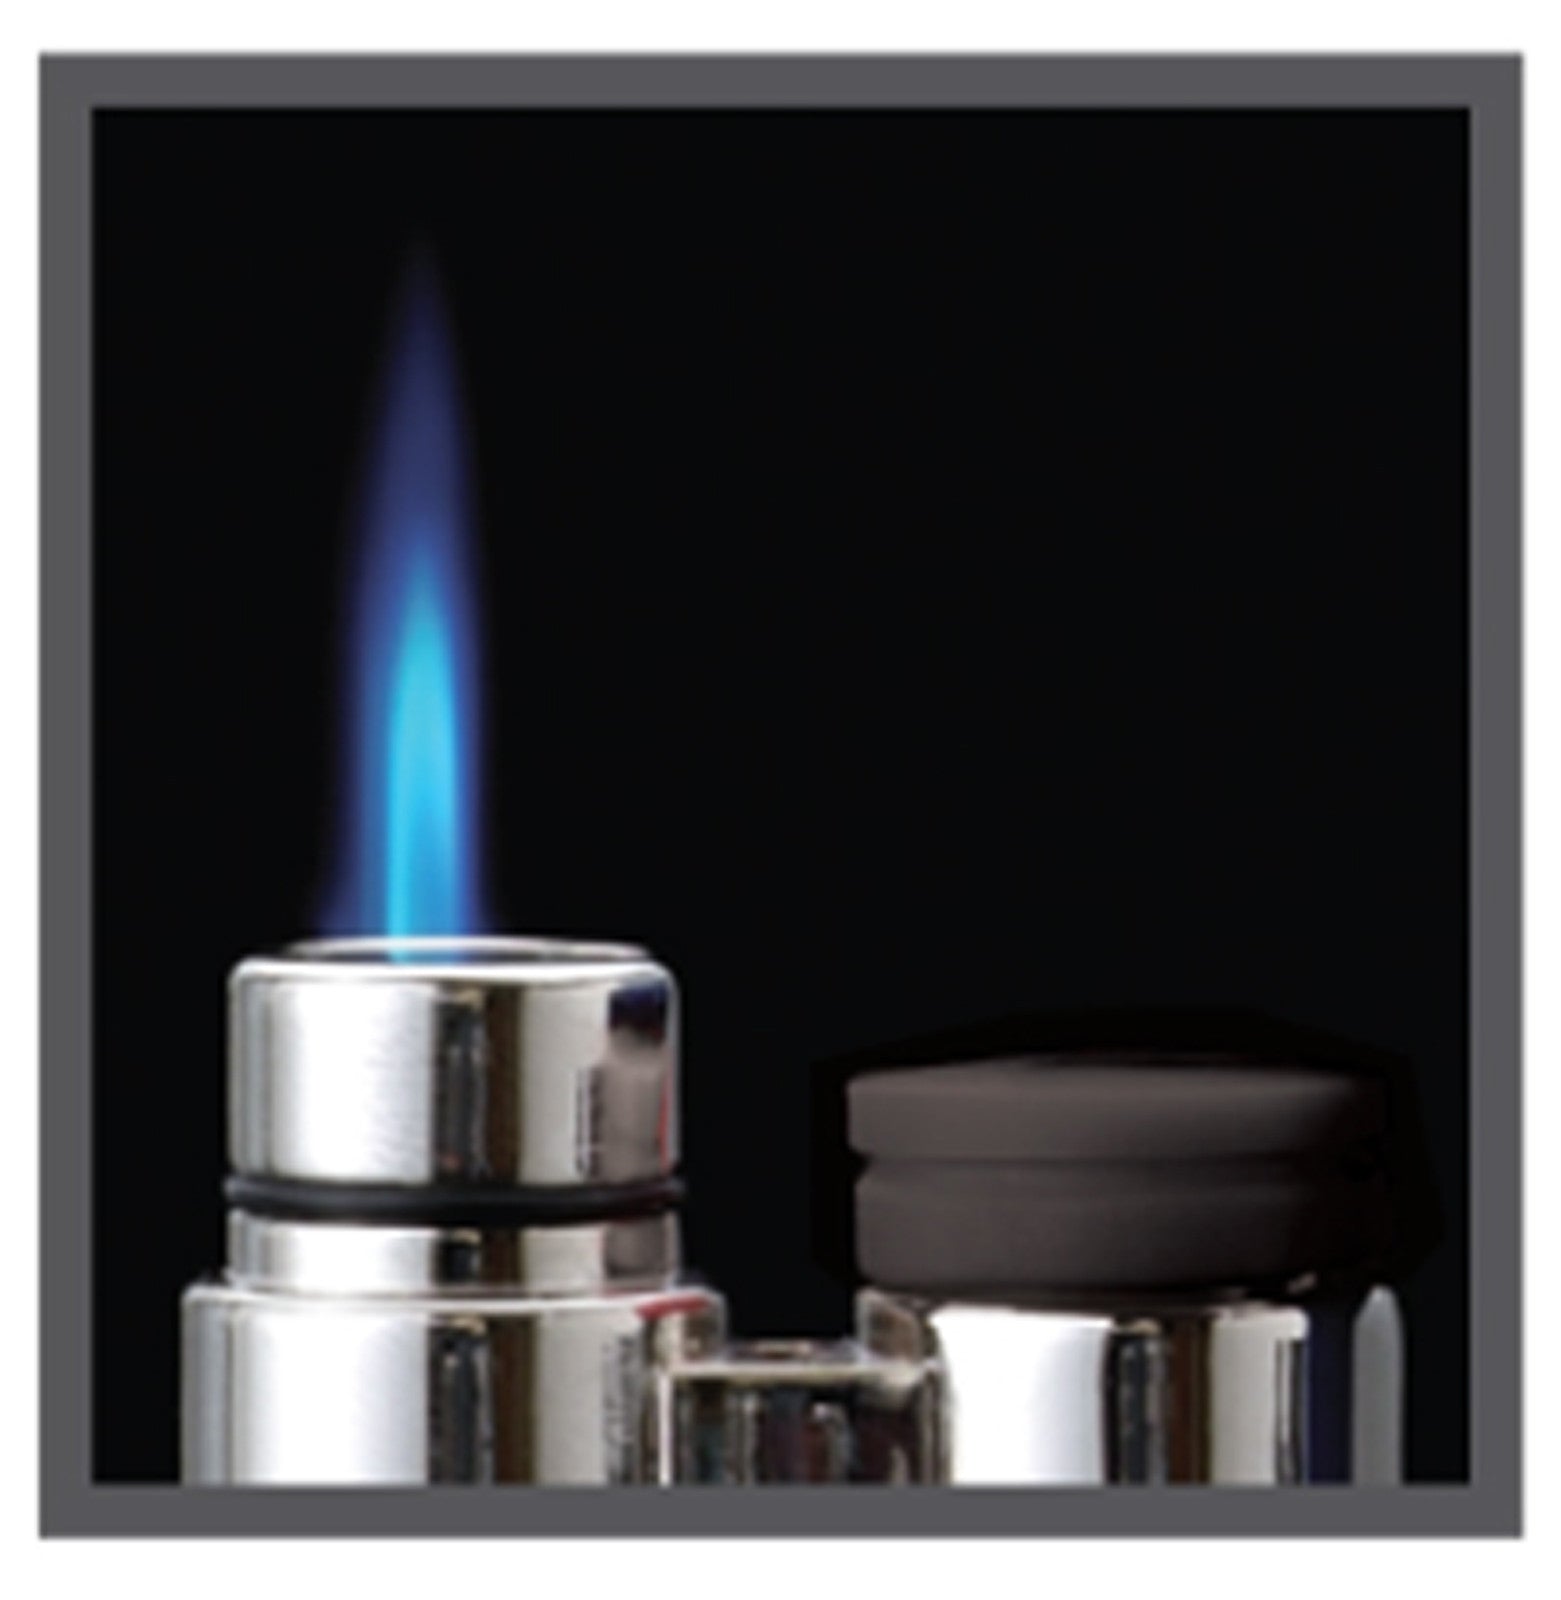 Sikaro Thunder Torch Lighter 06-01-101 Silver / black w/ larger gas tank